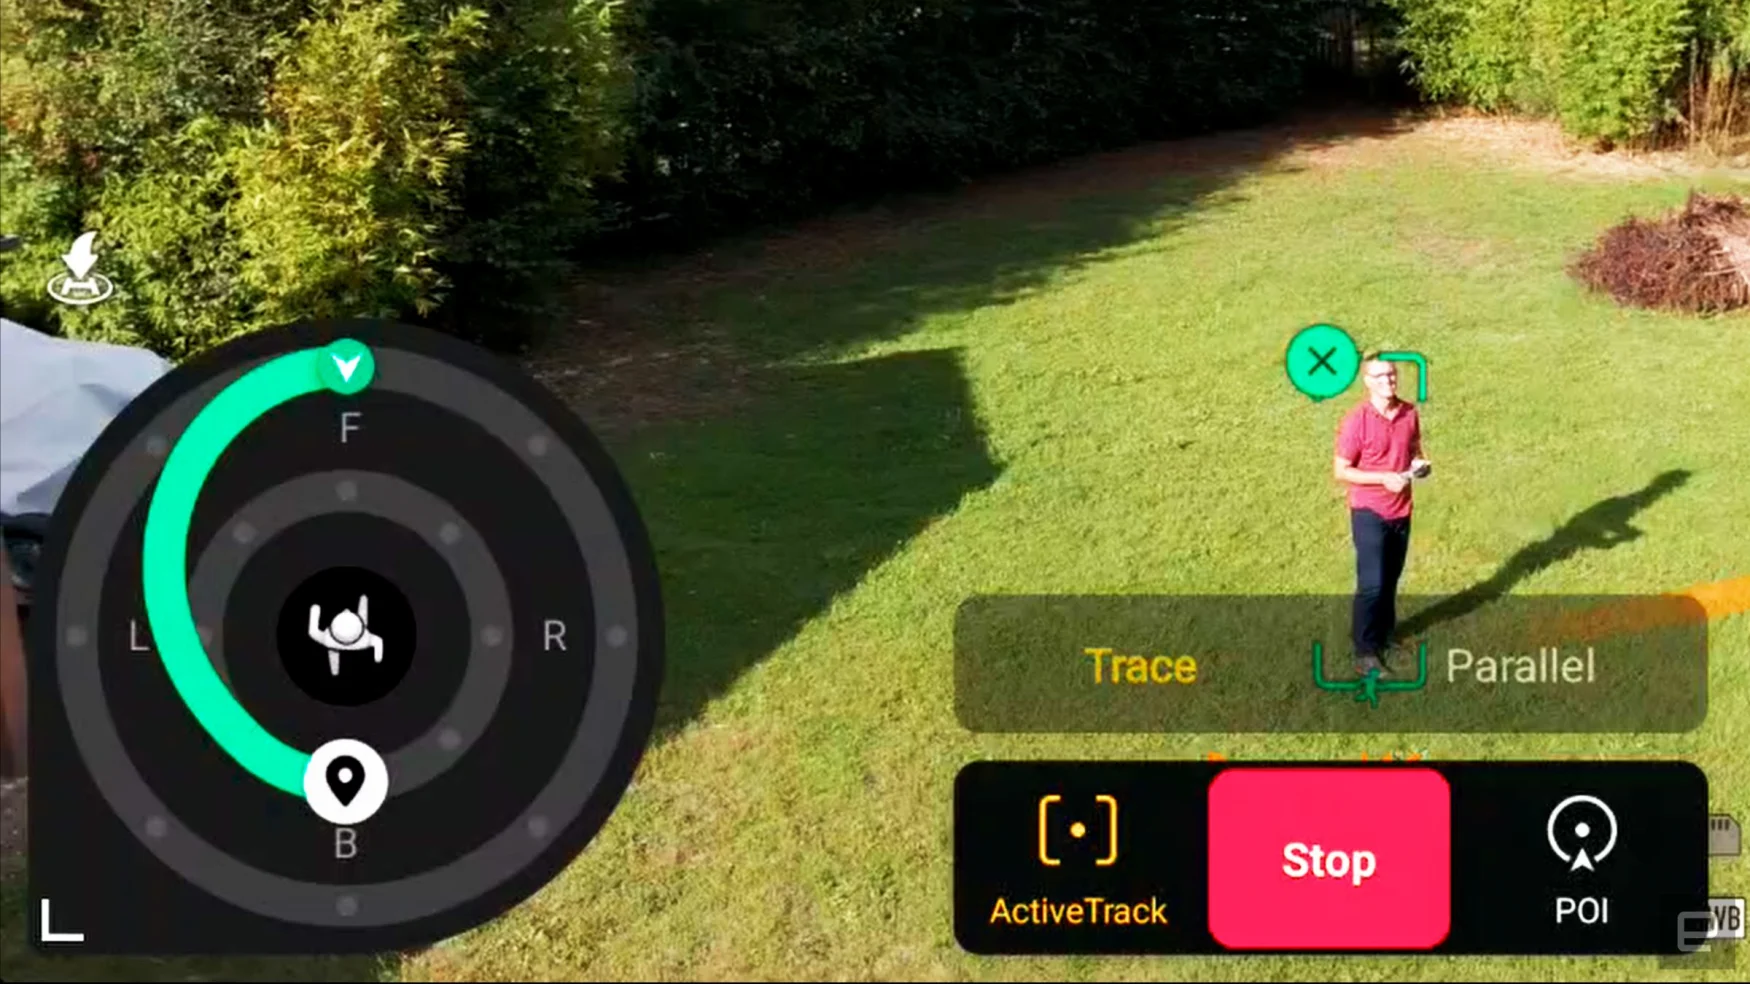 Κριτική για το DJI Mini 4 Pro: Το καλύτερο ελαφρύ drone αποκτά περισσότερη δύναμη και έξυπνο